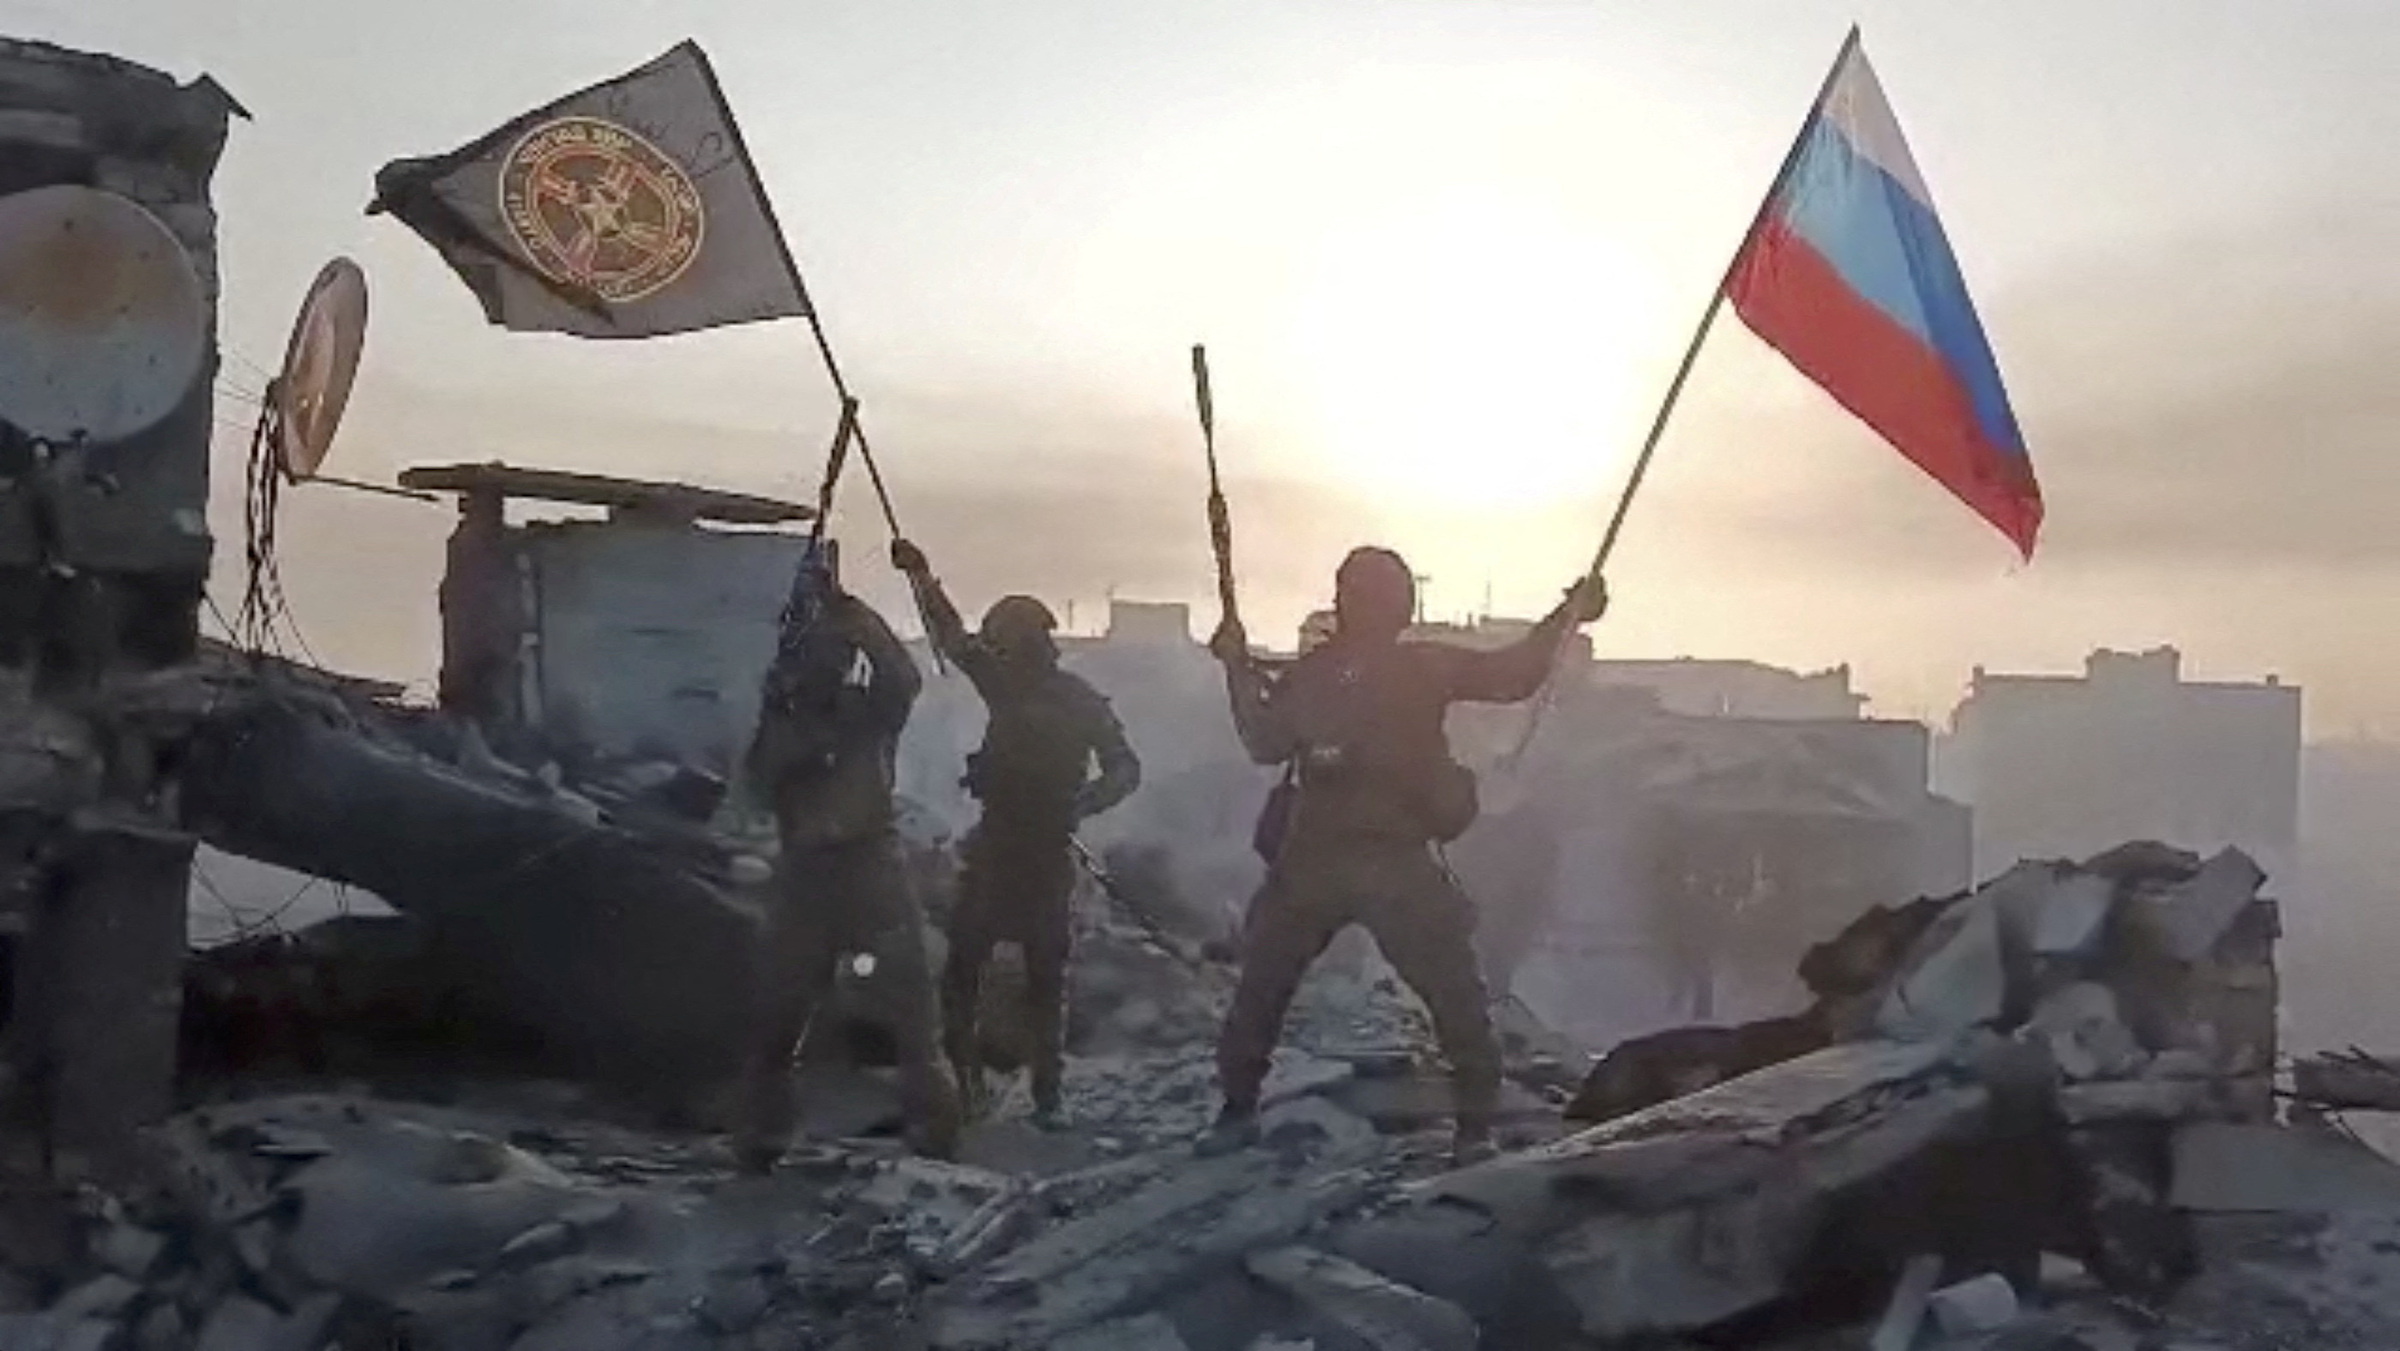 Thành viên lực lượng Wagner giương cao cờ Nga và cờ Wagner trên một tòa nhà đổ nát không rõ địa điểm trong đoạn video công bố ngày 20/5. Ảnh: Reuters